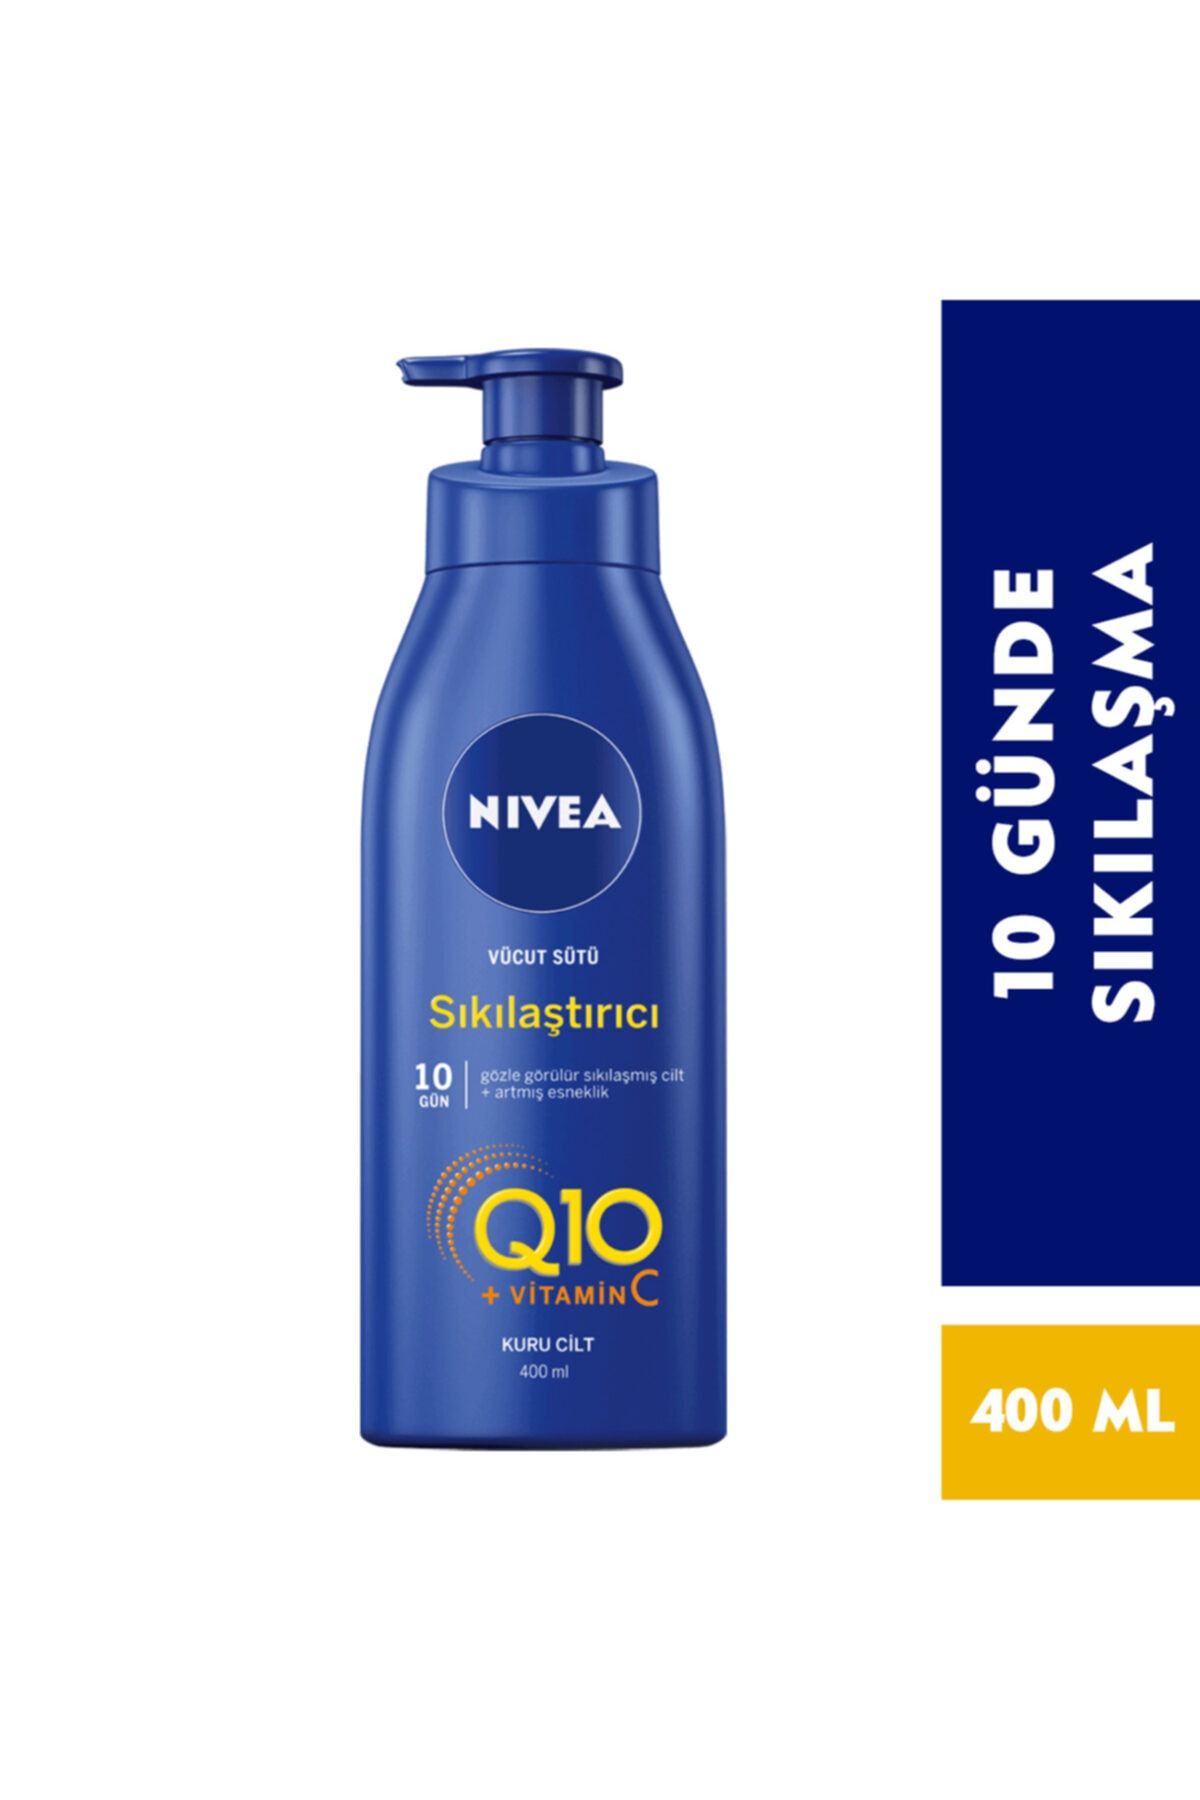 NIVEA Q10 Sıkılaştırıcı Vücut Sütü 400 ml